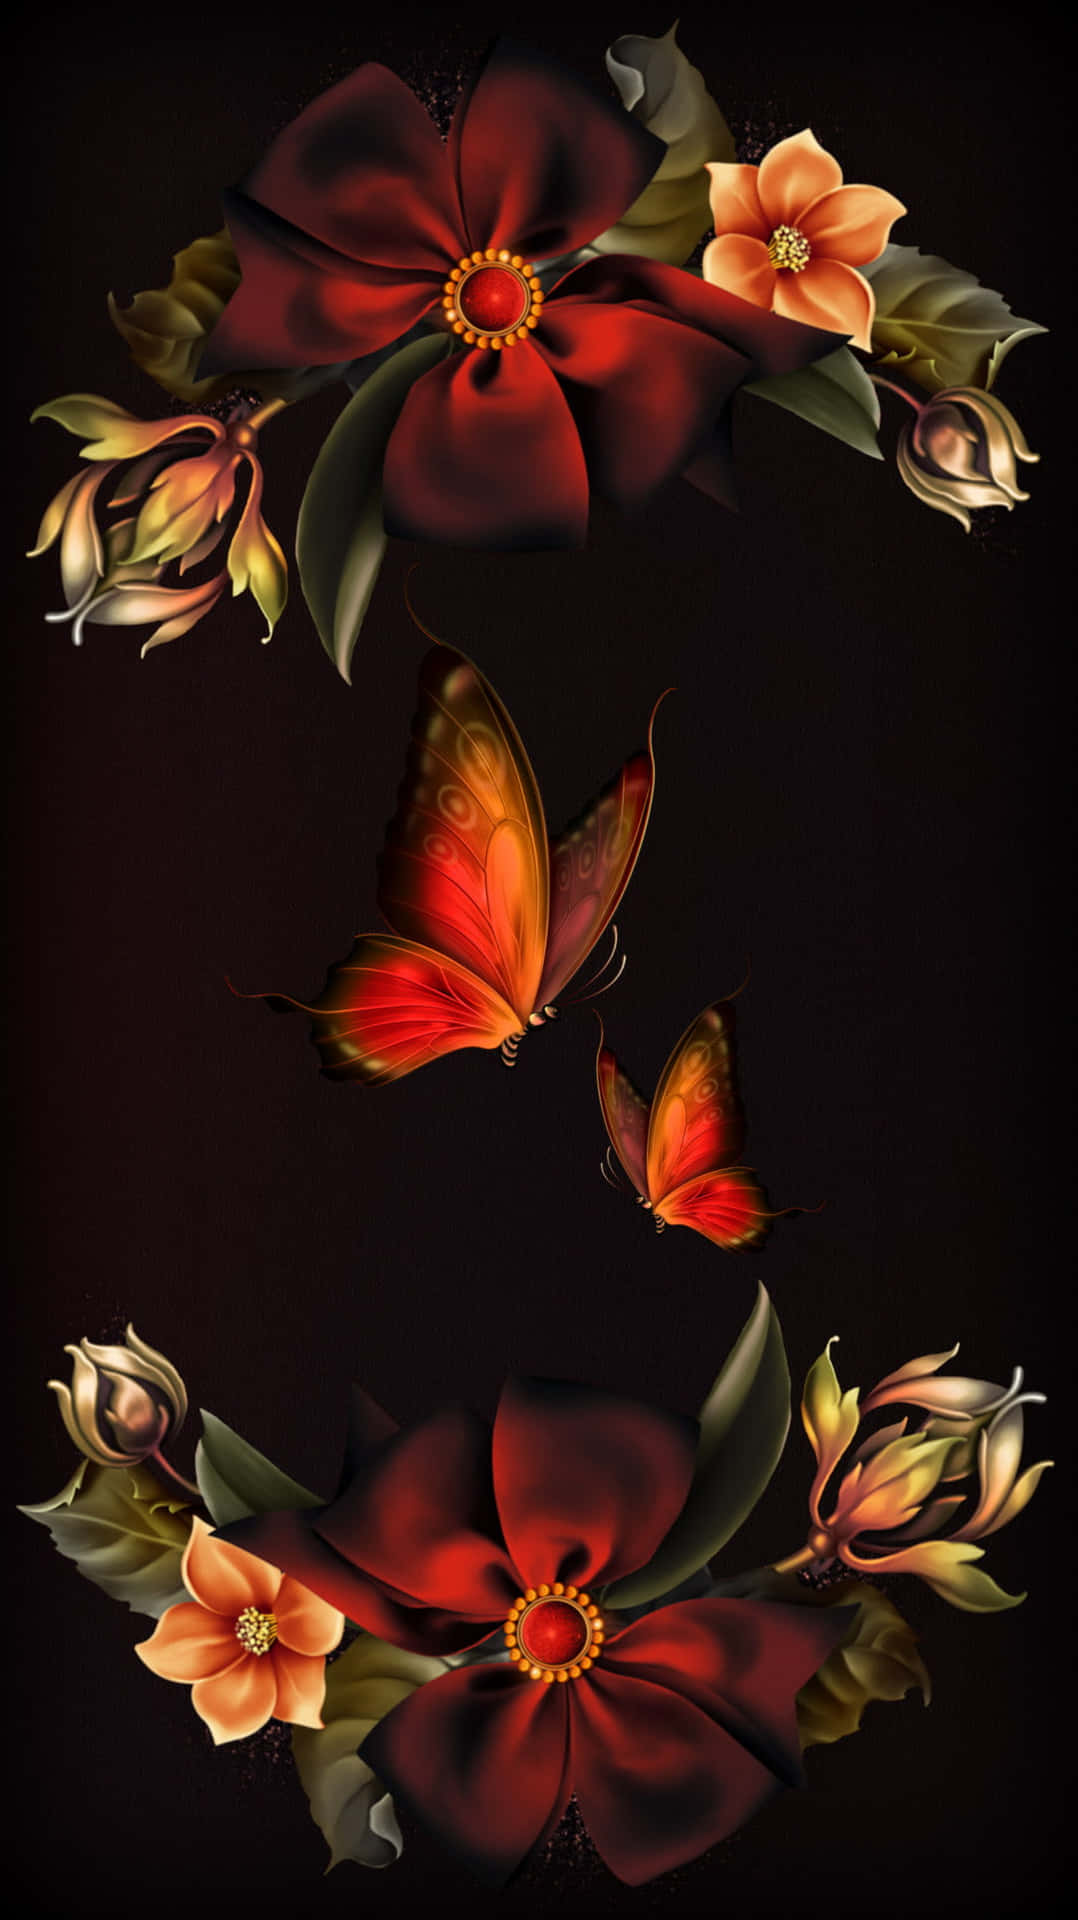 Einschwarzer Hintergrund Mit Roten Blumen Und Schmetterlingen.